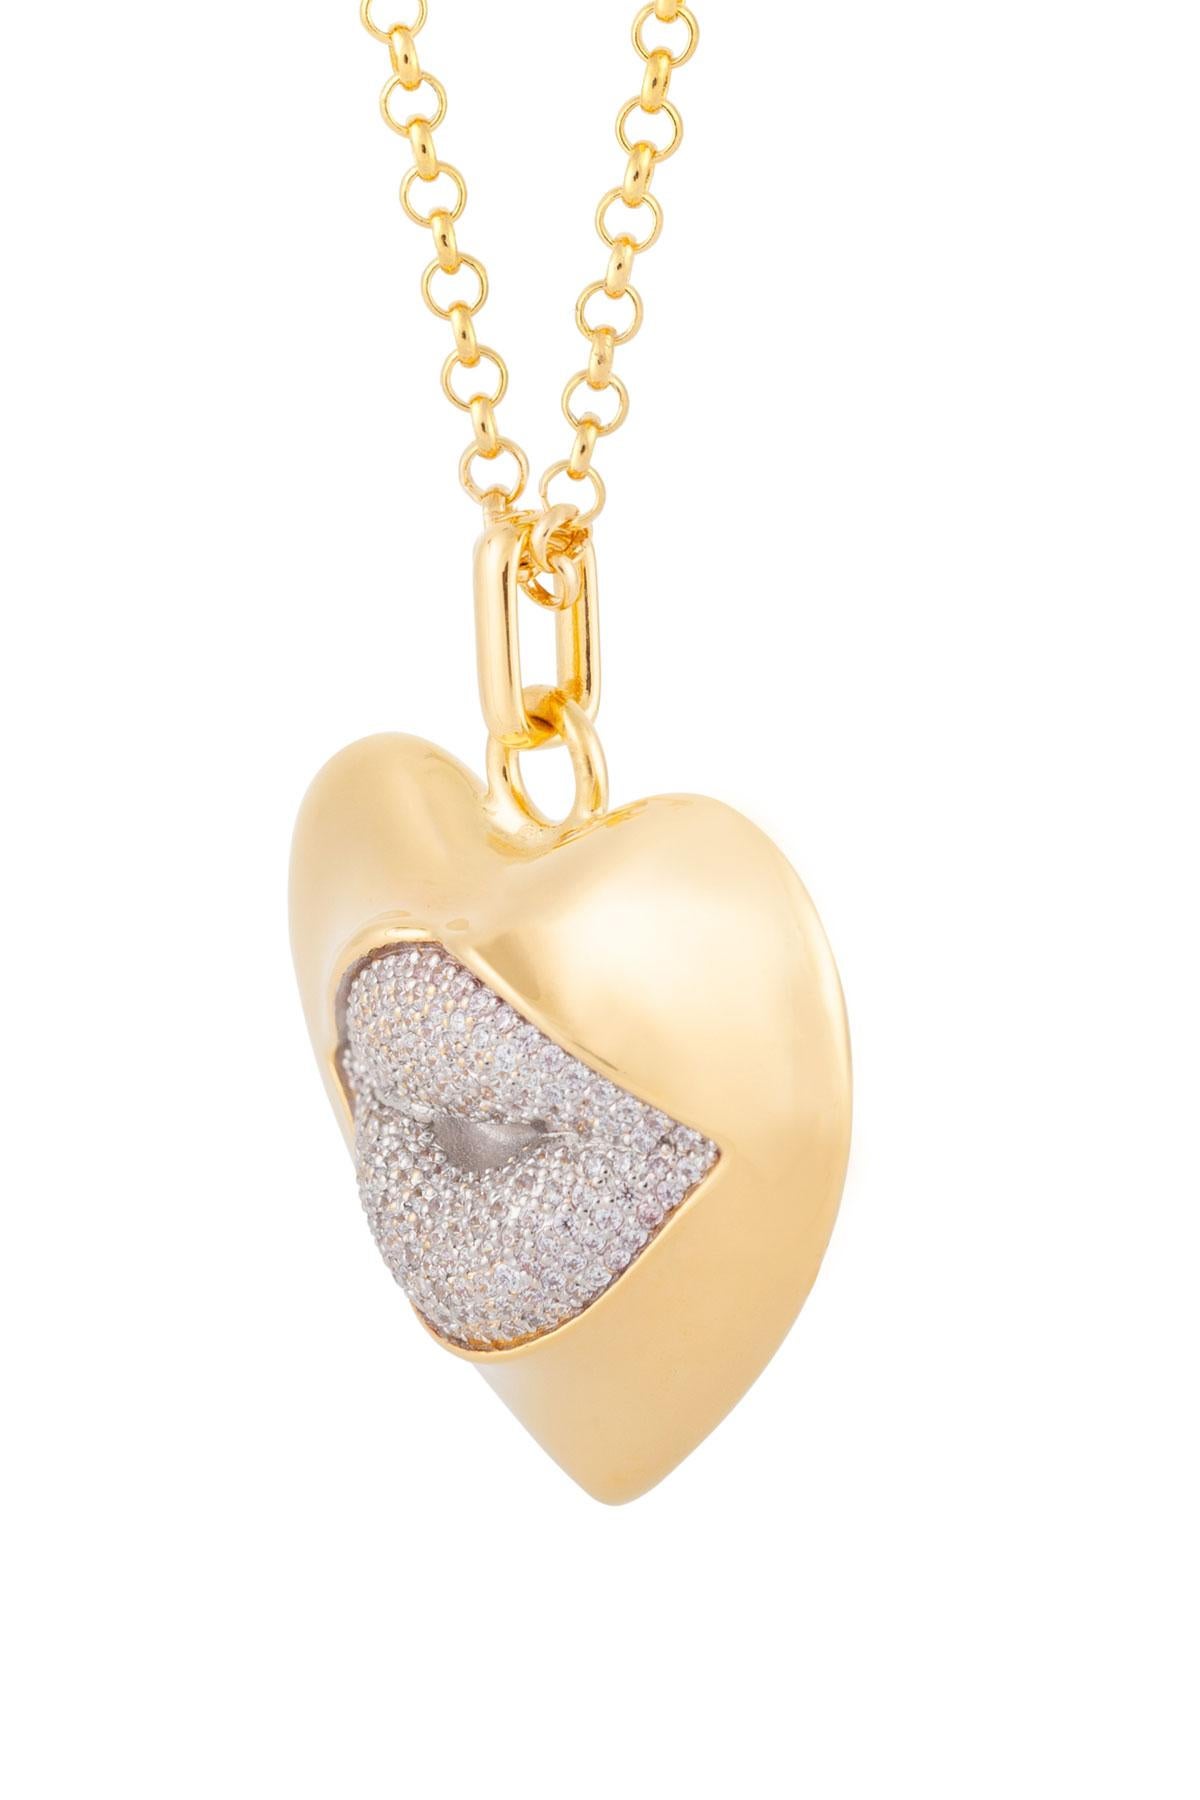 Die Liebe beginnt im Herzen und hält auf den Lippen an. Das könnte die sexieste Halskette aller Zeiten sein! Unsere sexy Herz-Halskette aus Gold mit einem Diamantkuss. Zeigt eure Liebe!

Zusammensetzung: Sterling Silber, 18K Gold Vermeil, Rhodium